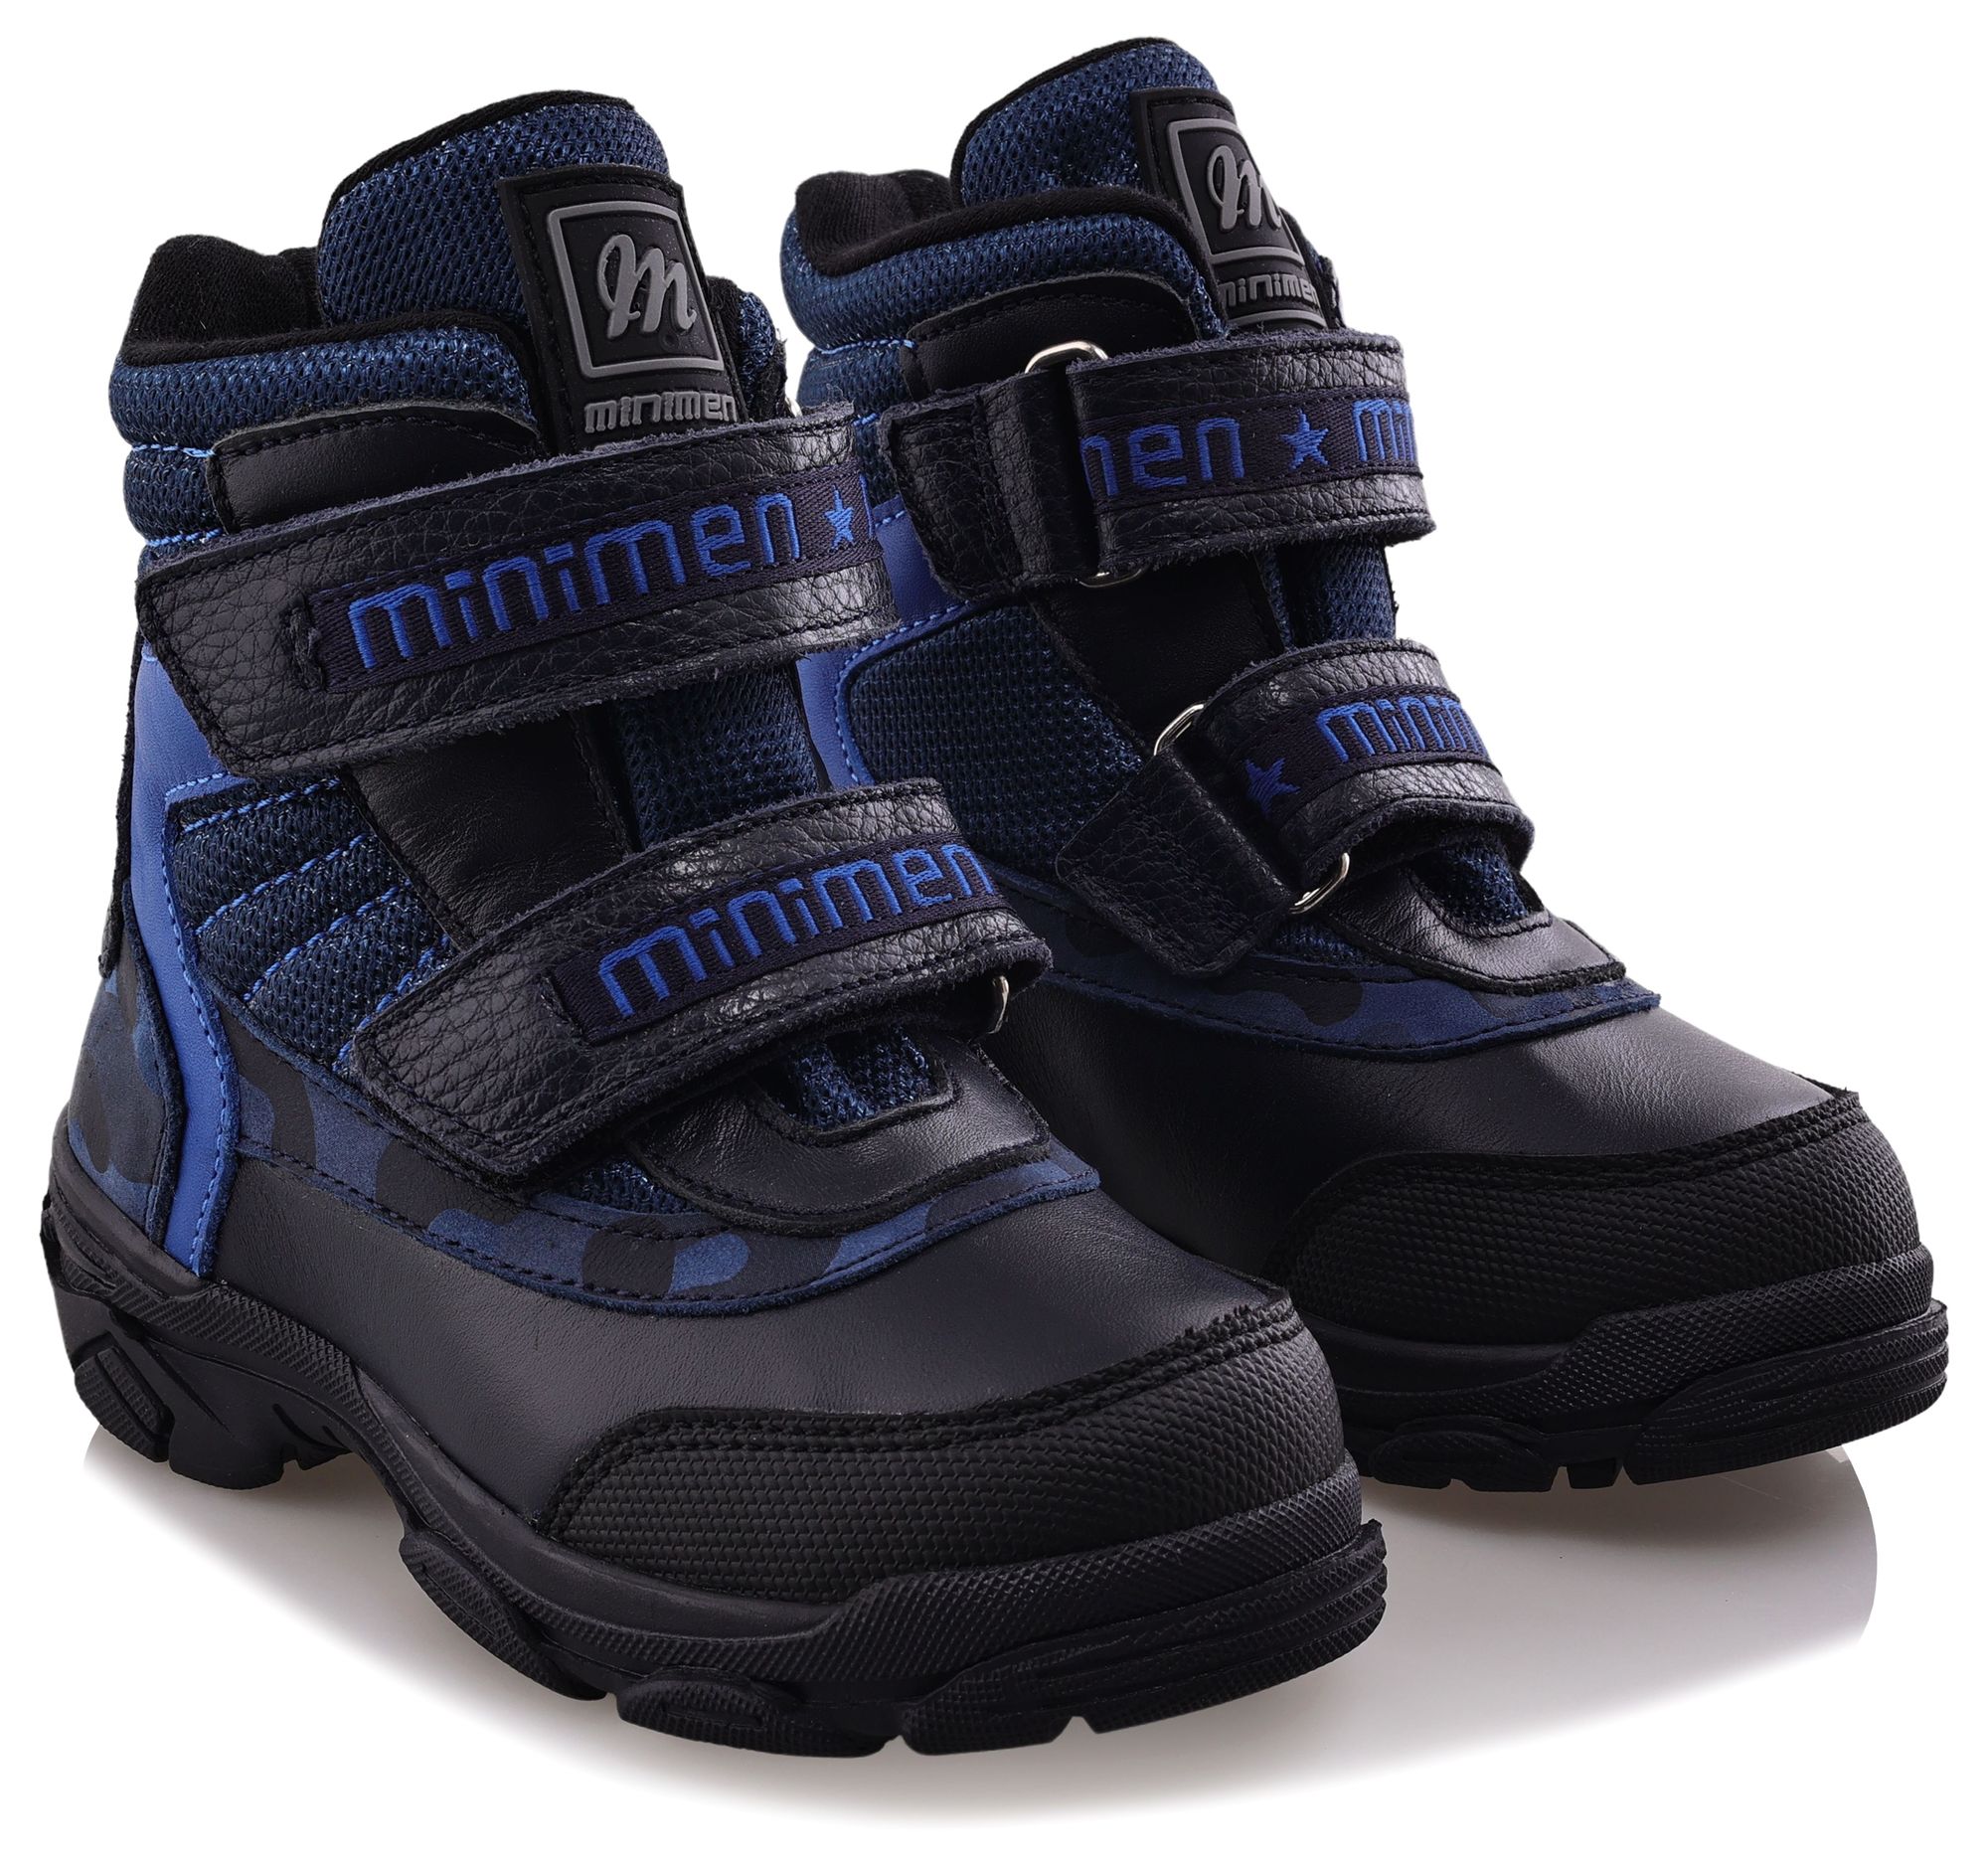 Ботинки Minimen для мальчиков, тёмно-синие, размер 26, 2655-53-23B-02